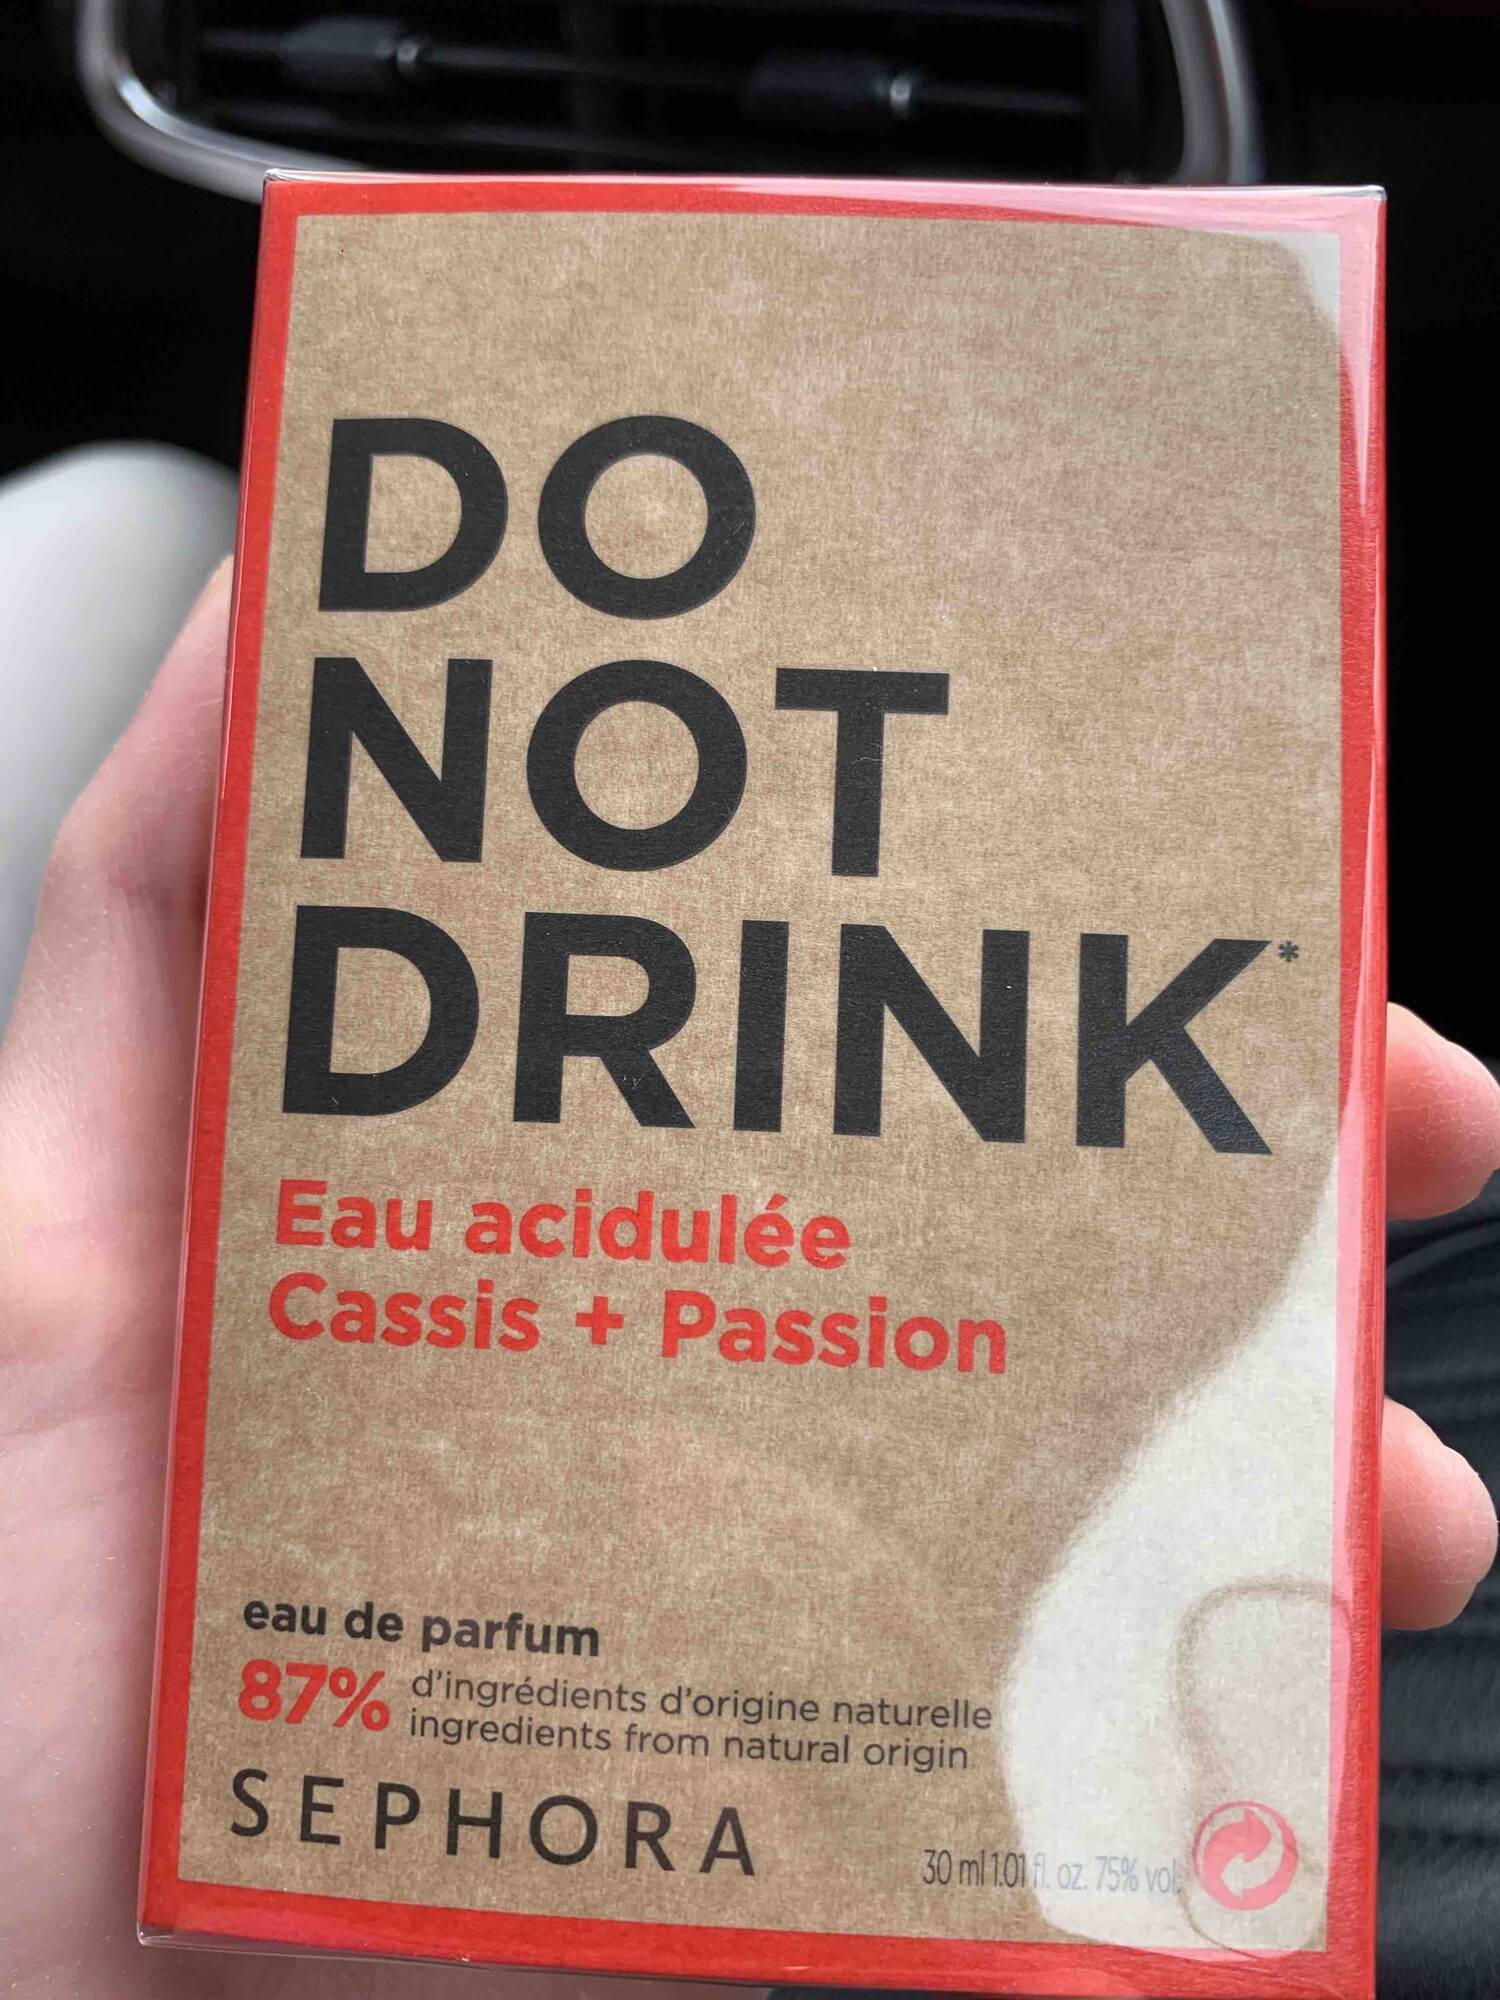 SEPHORA - Do not drink eau acidulée cassis + passion - Eau de parfum